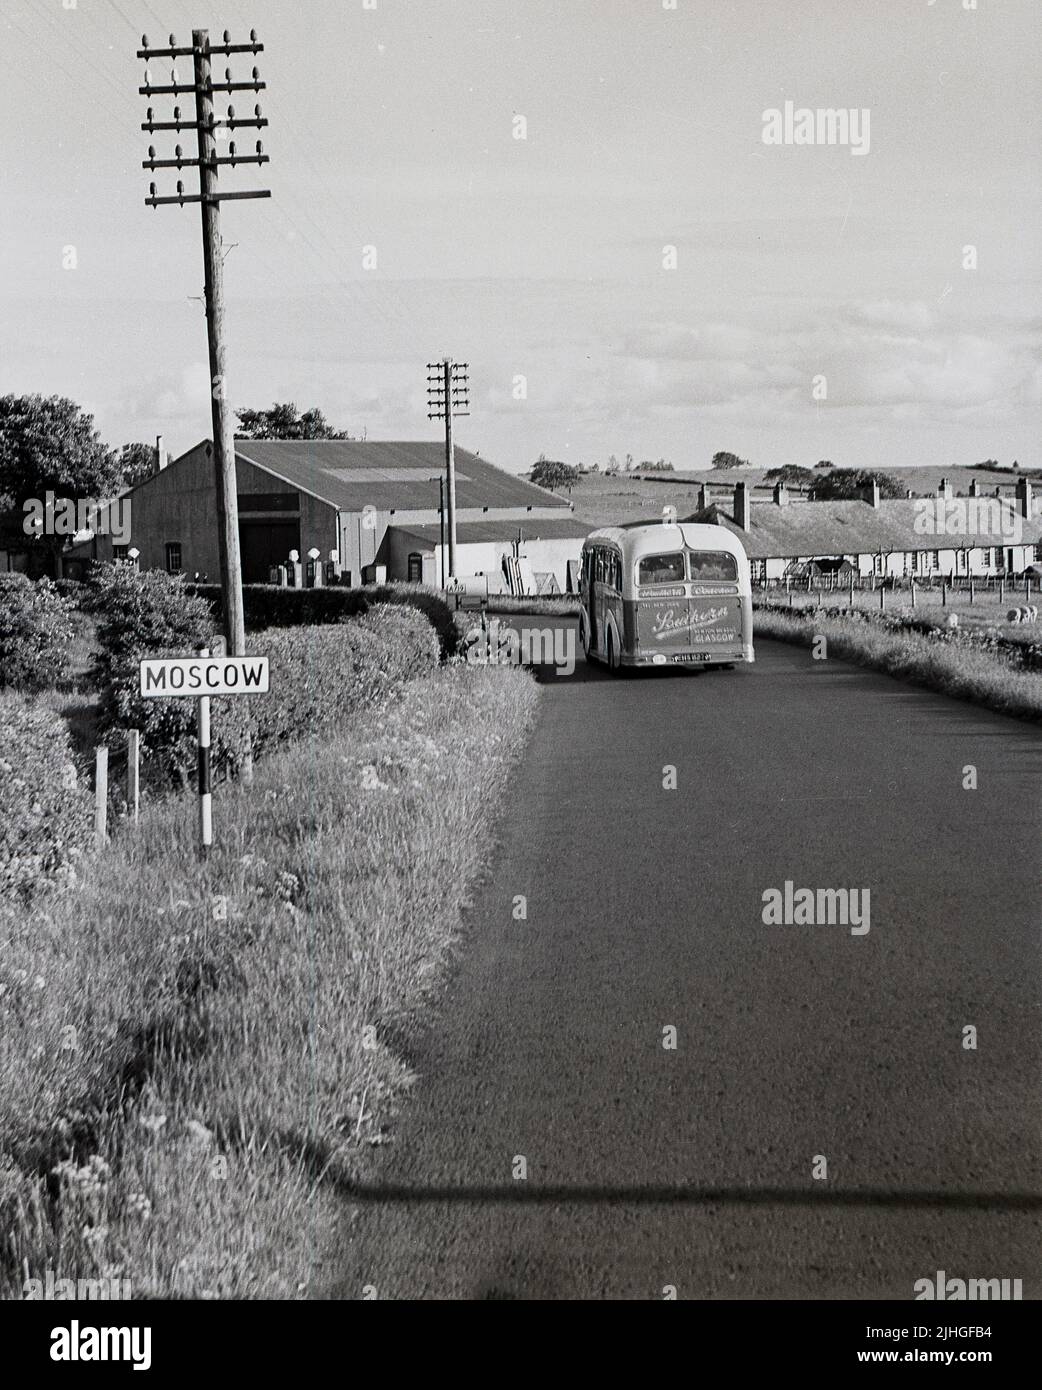 1960s, historique, panneau routier au bord du village de Moscou, Galston, Kilmarnock, Écosse, Royaume-Uni, prenez l'autocar sur la route. Banque D'Images